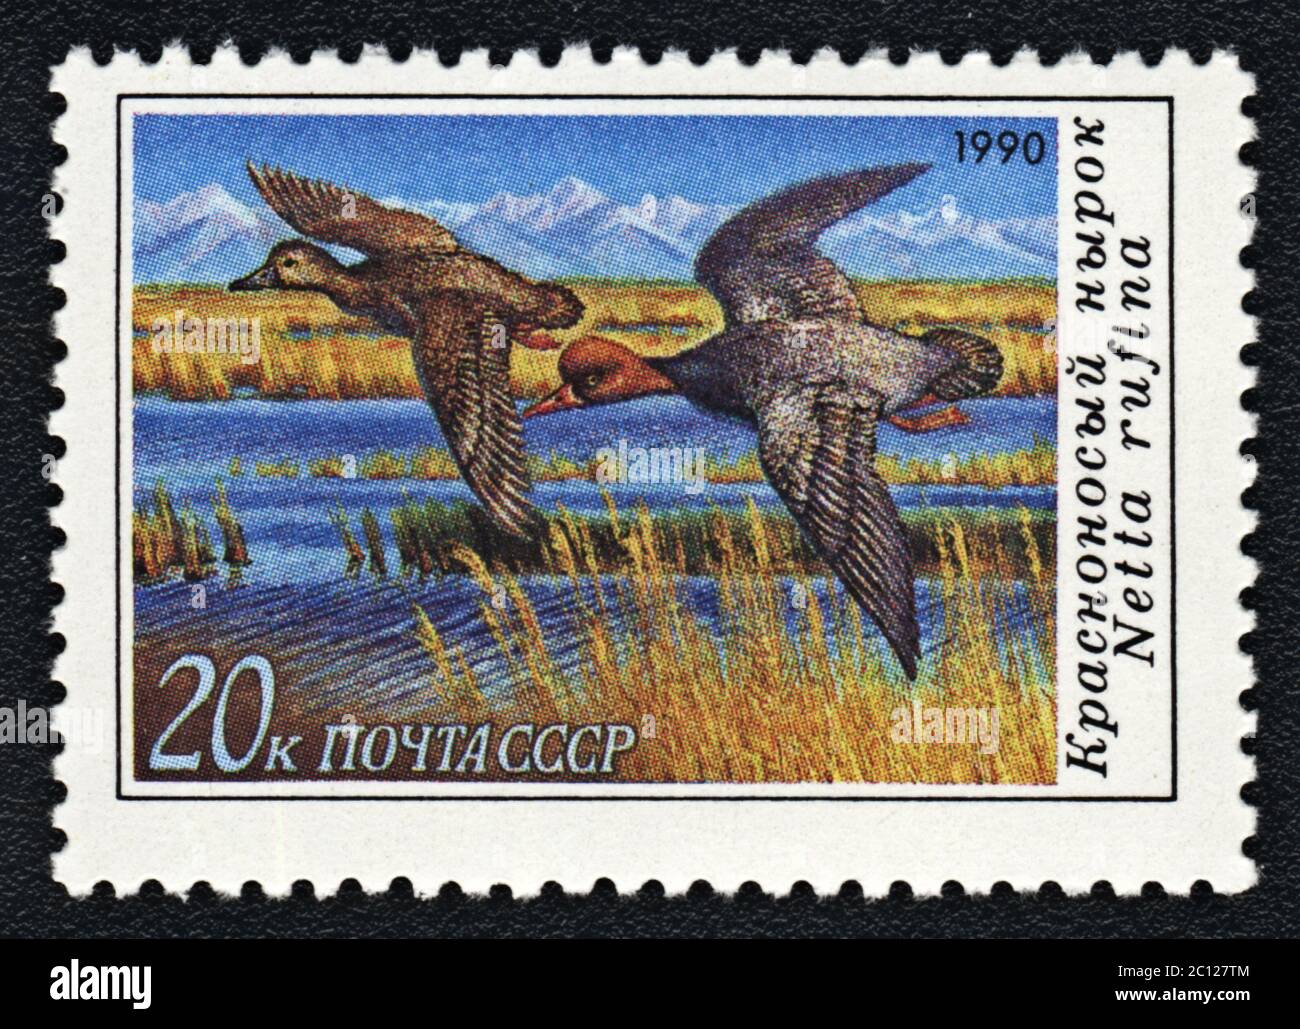 Ente Rotschampappe oder Netta rufina. Briefmarke UdSSR, 1990 Stockfoto